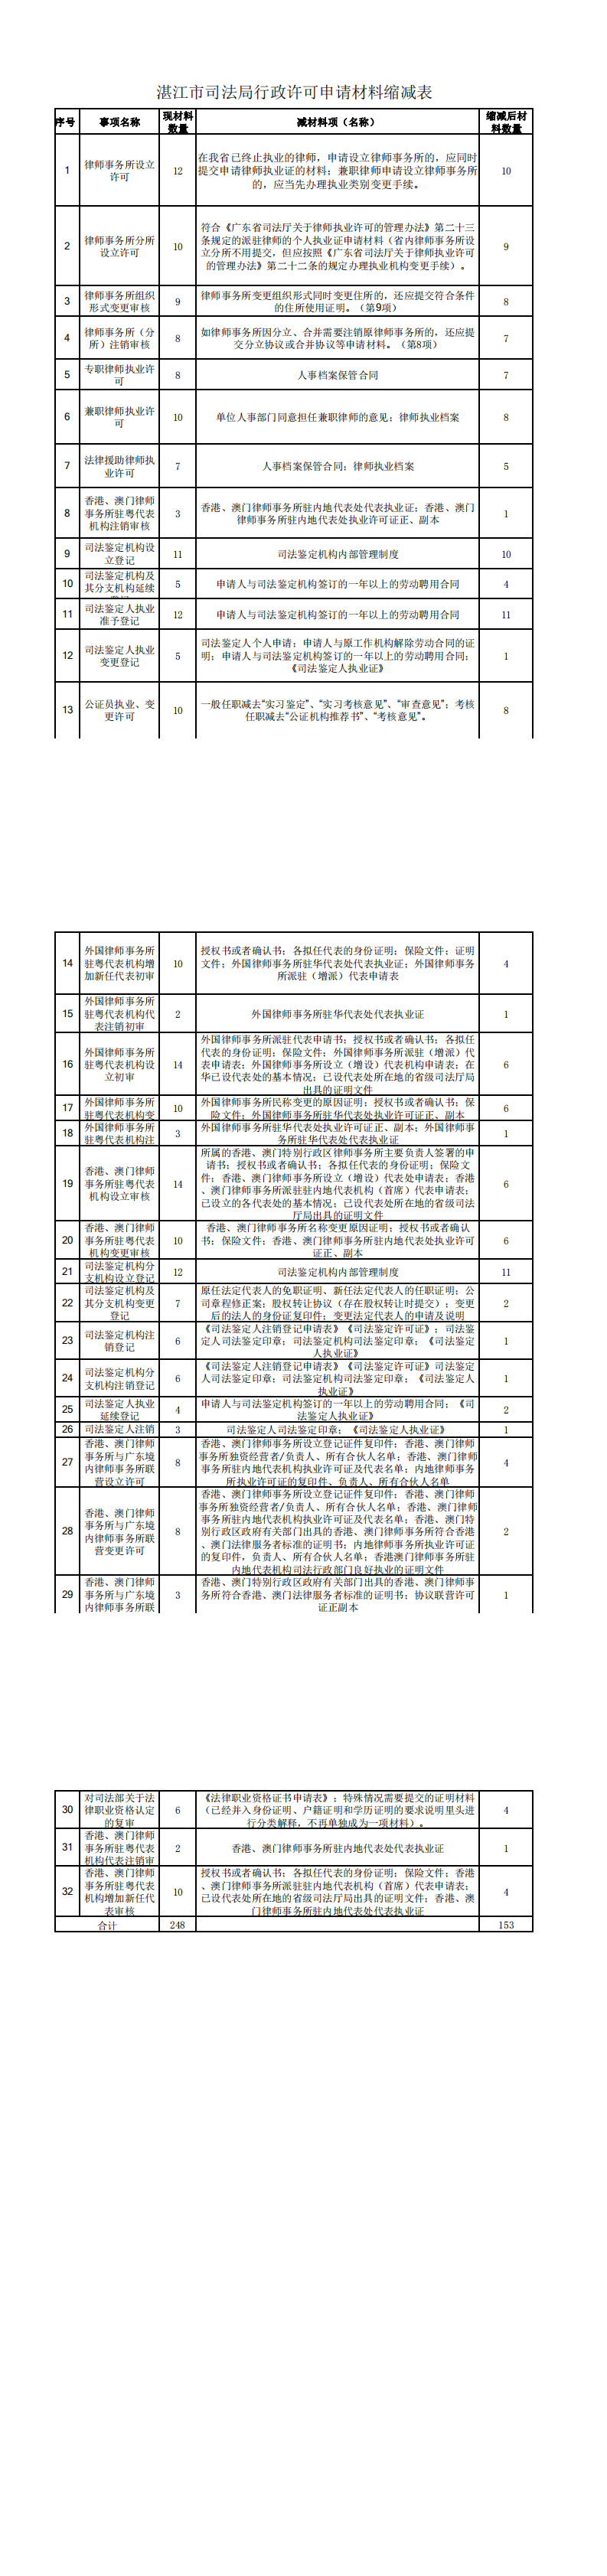 湛江市司法局行政许可申请材料缩减表_0.png